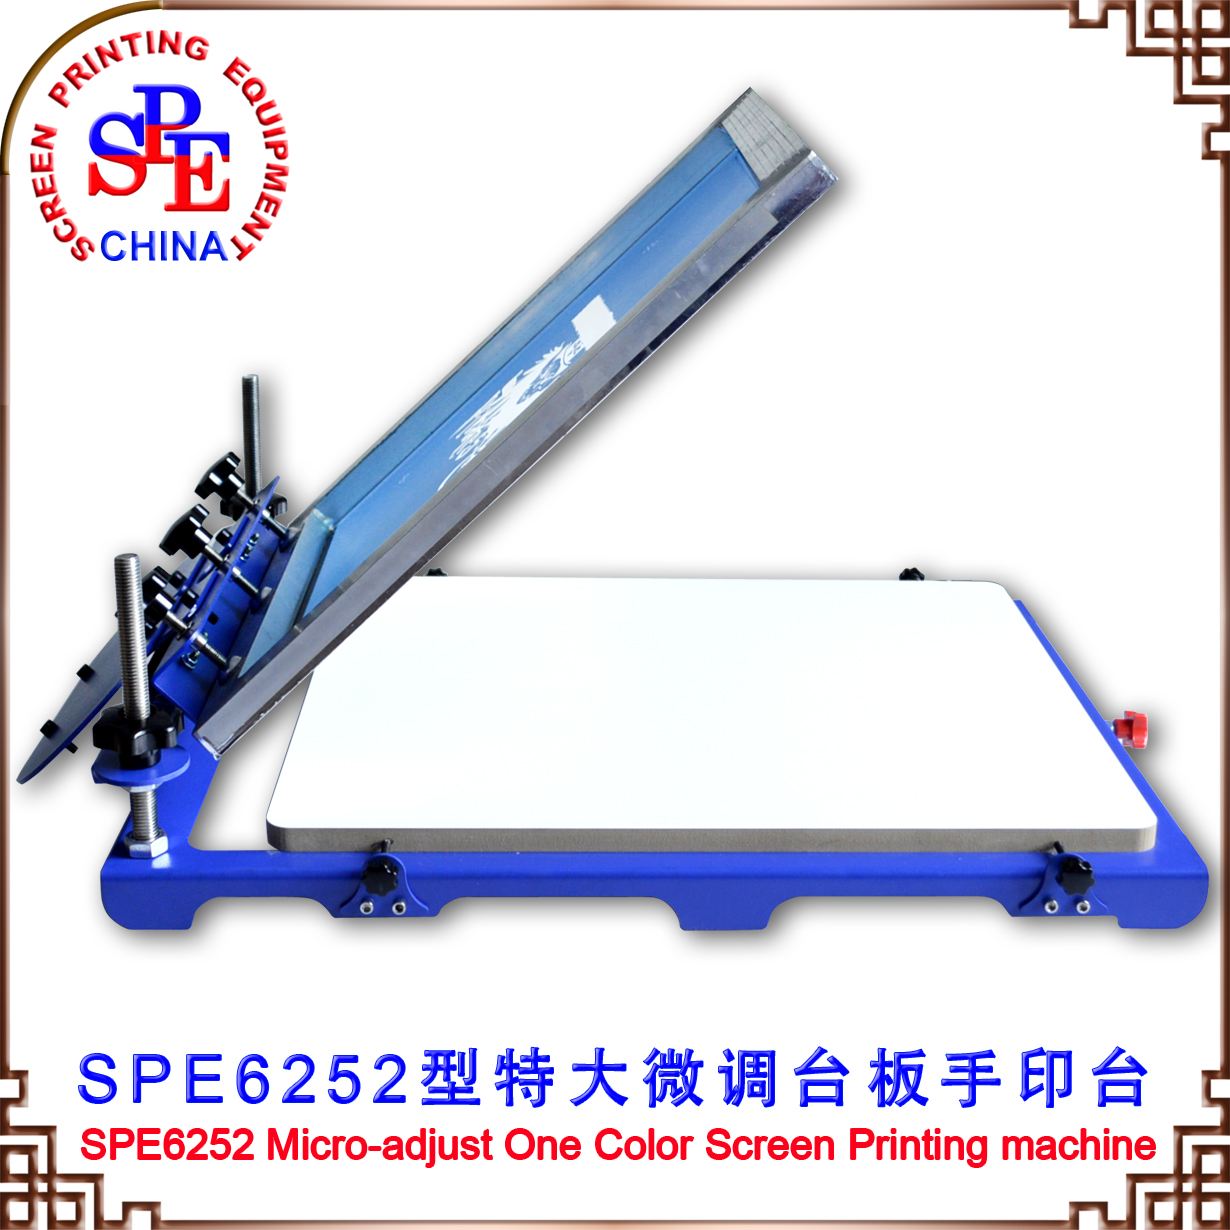 6252大丝印台布料单色平面丝网印刷机手印台丝印机手动厂家直销